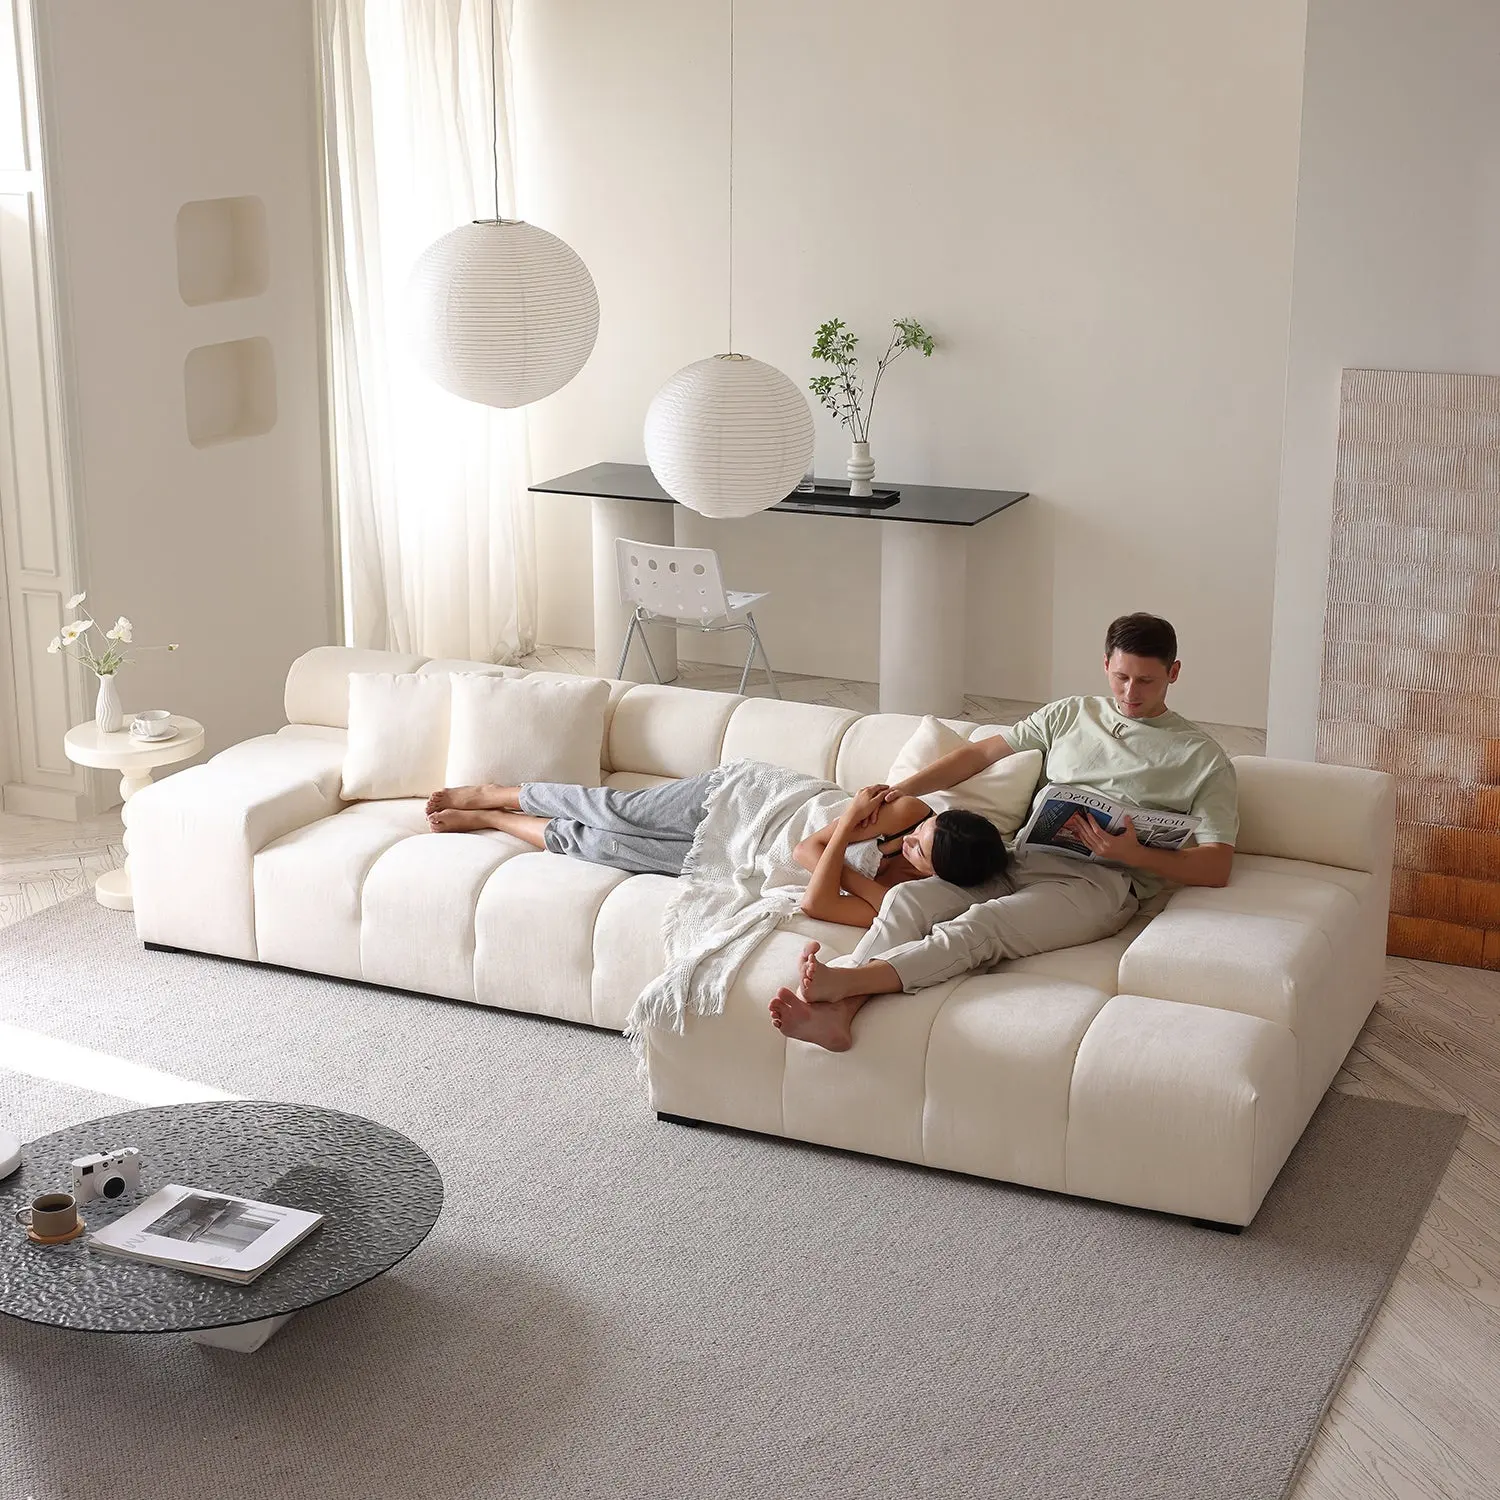 Fabrika doğrudan satış oturma odası mobilya Modern İtalyan çekyat kol kumaş kesit kanepe ile